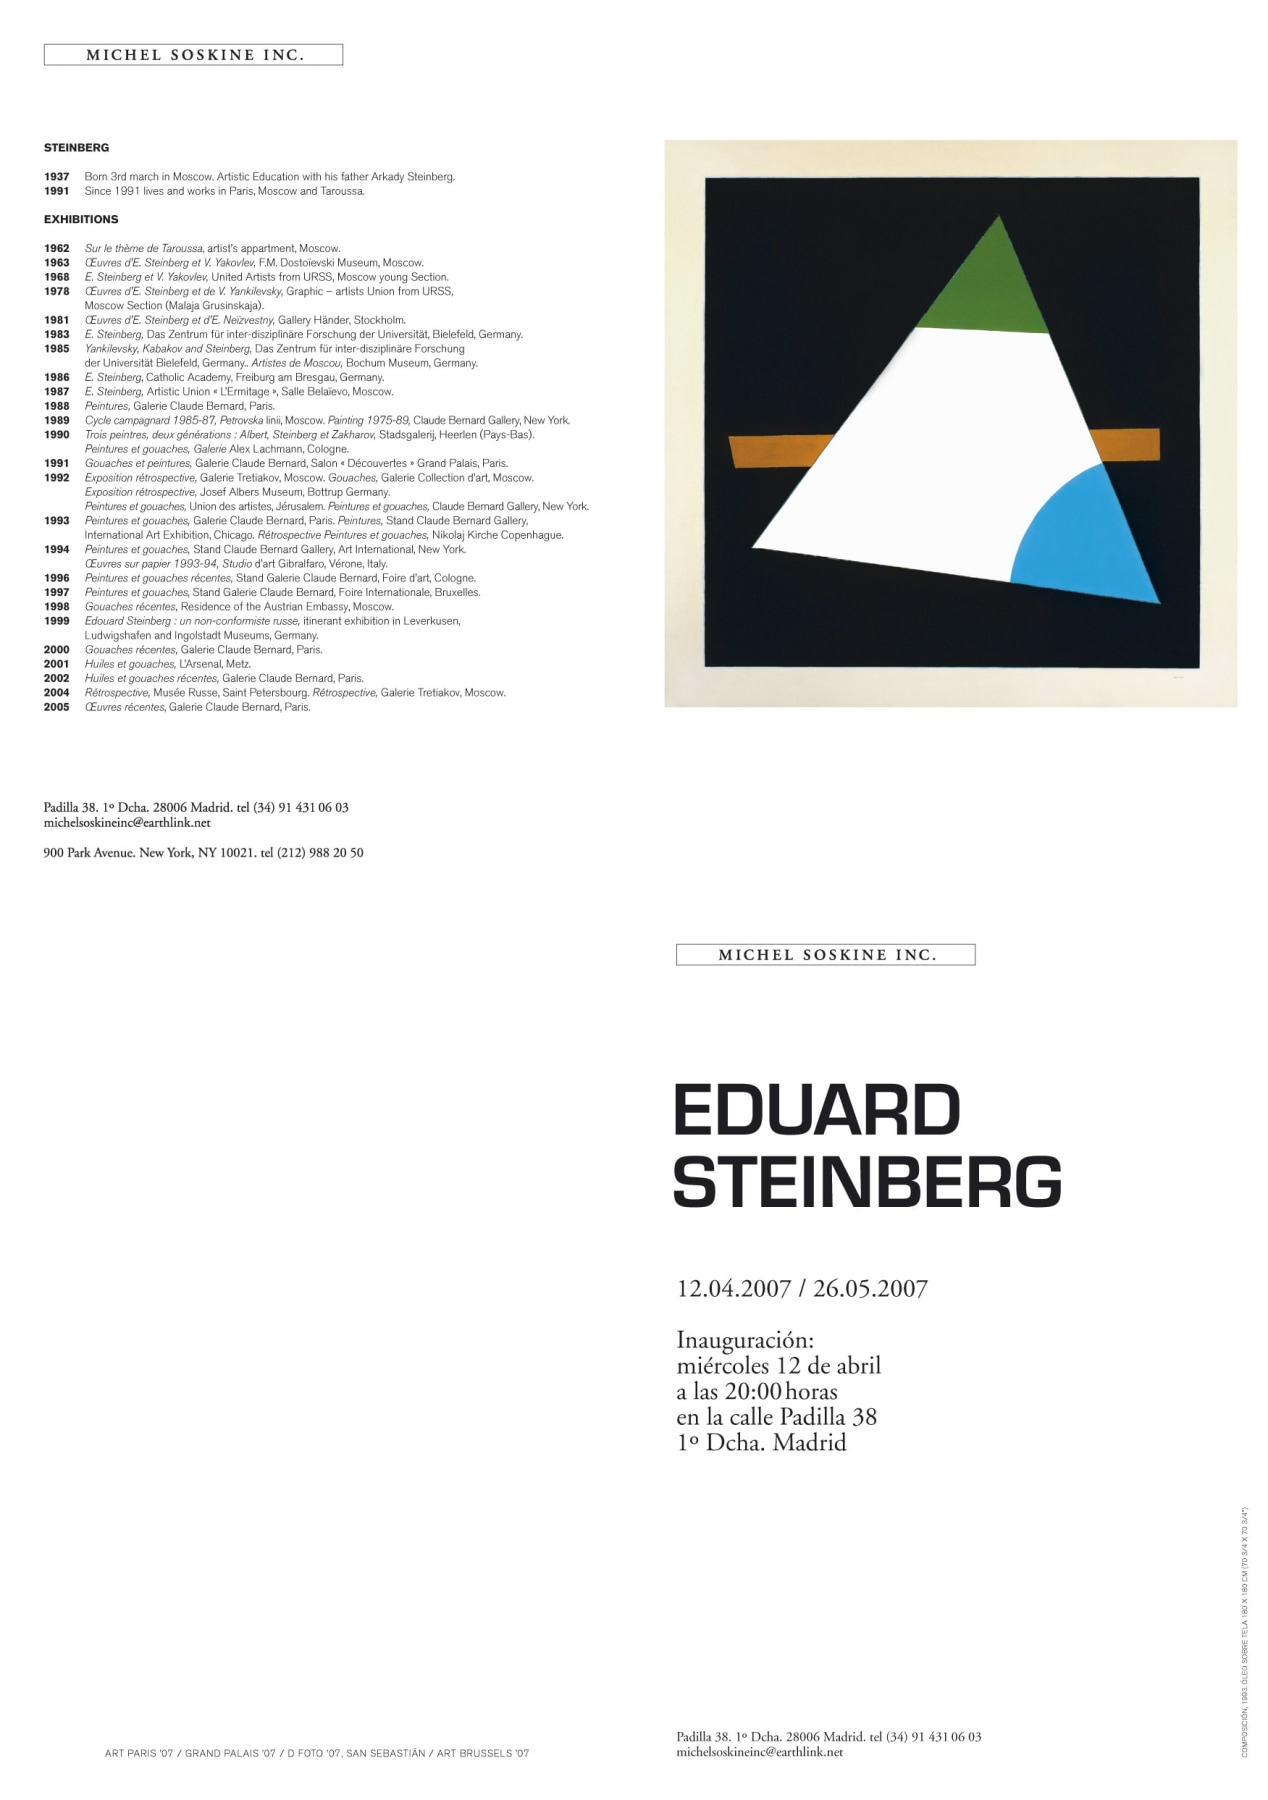 EDUARD STEINBERG